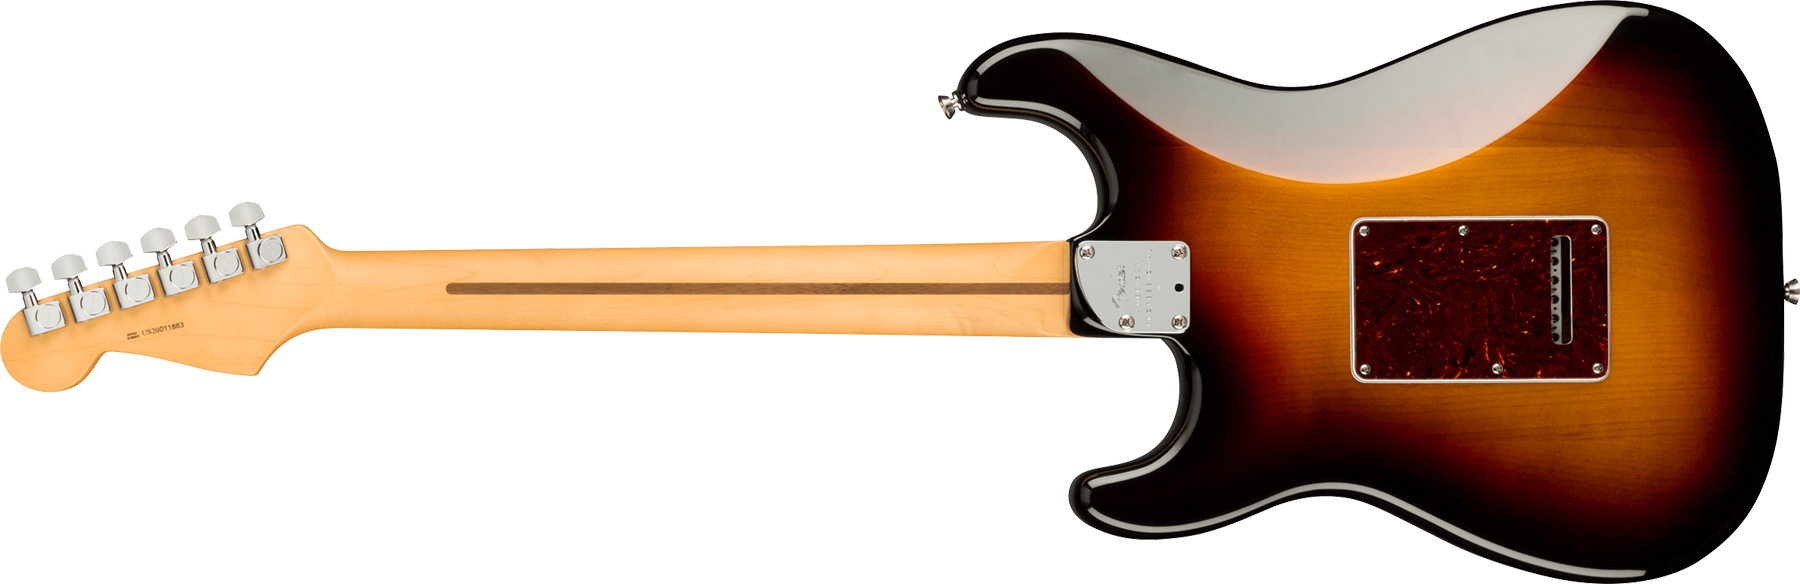 Fender Strat American Professional Ii Hss Usa Mn - 3-color Sunburst - E-Gitarre in Str-Form - Variation 1